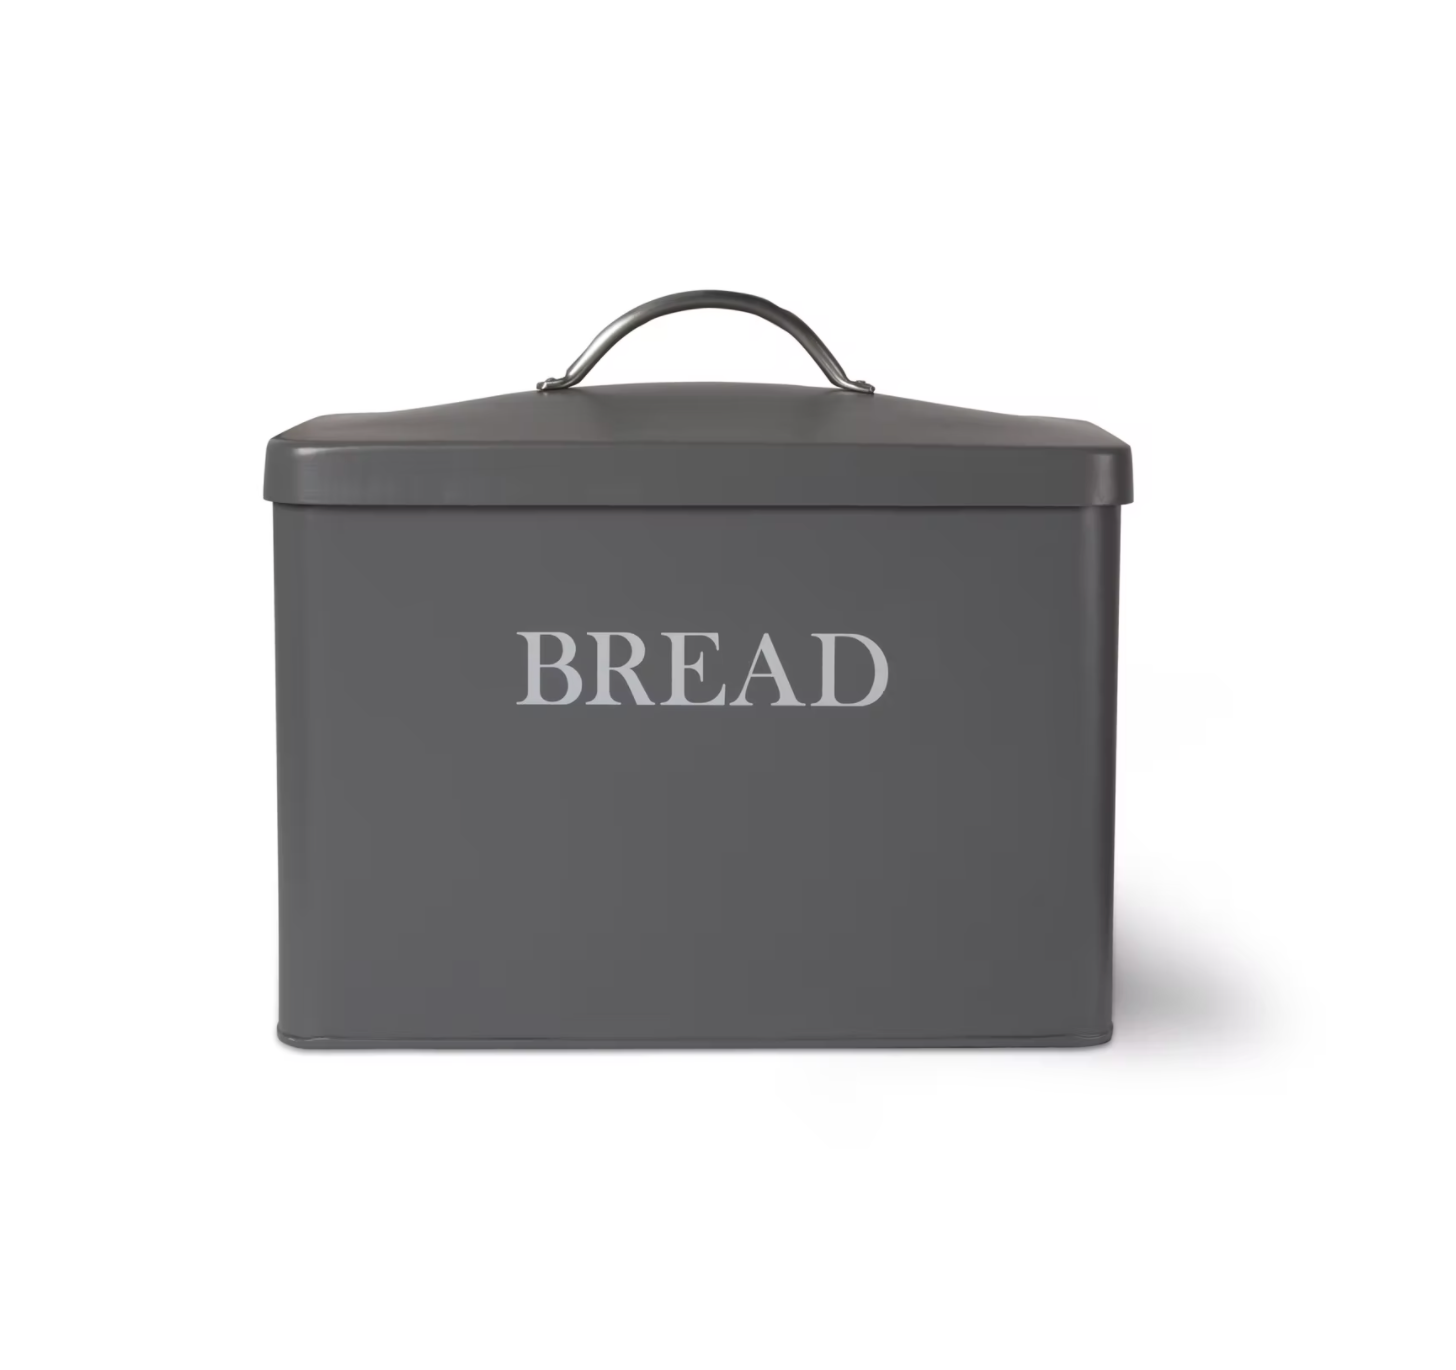 garden-trading-charcoal-steel-bread-bin